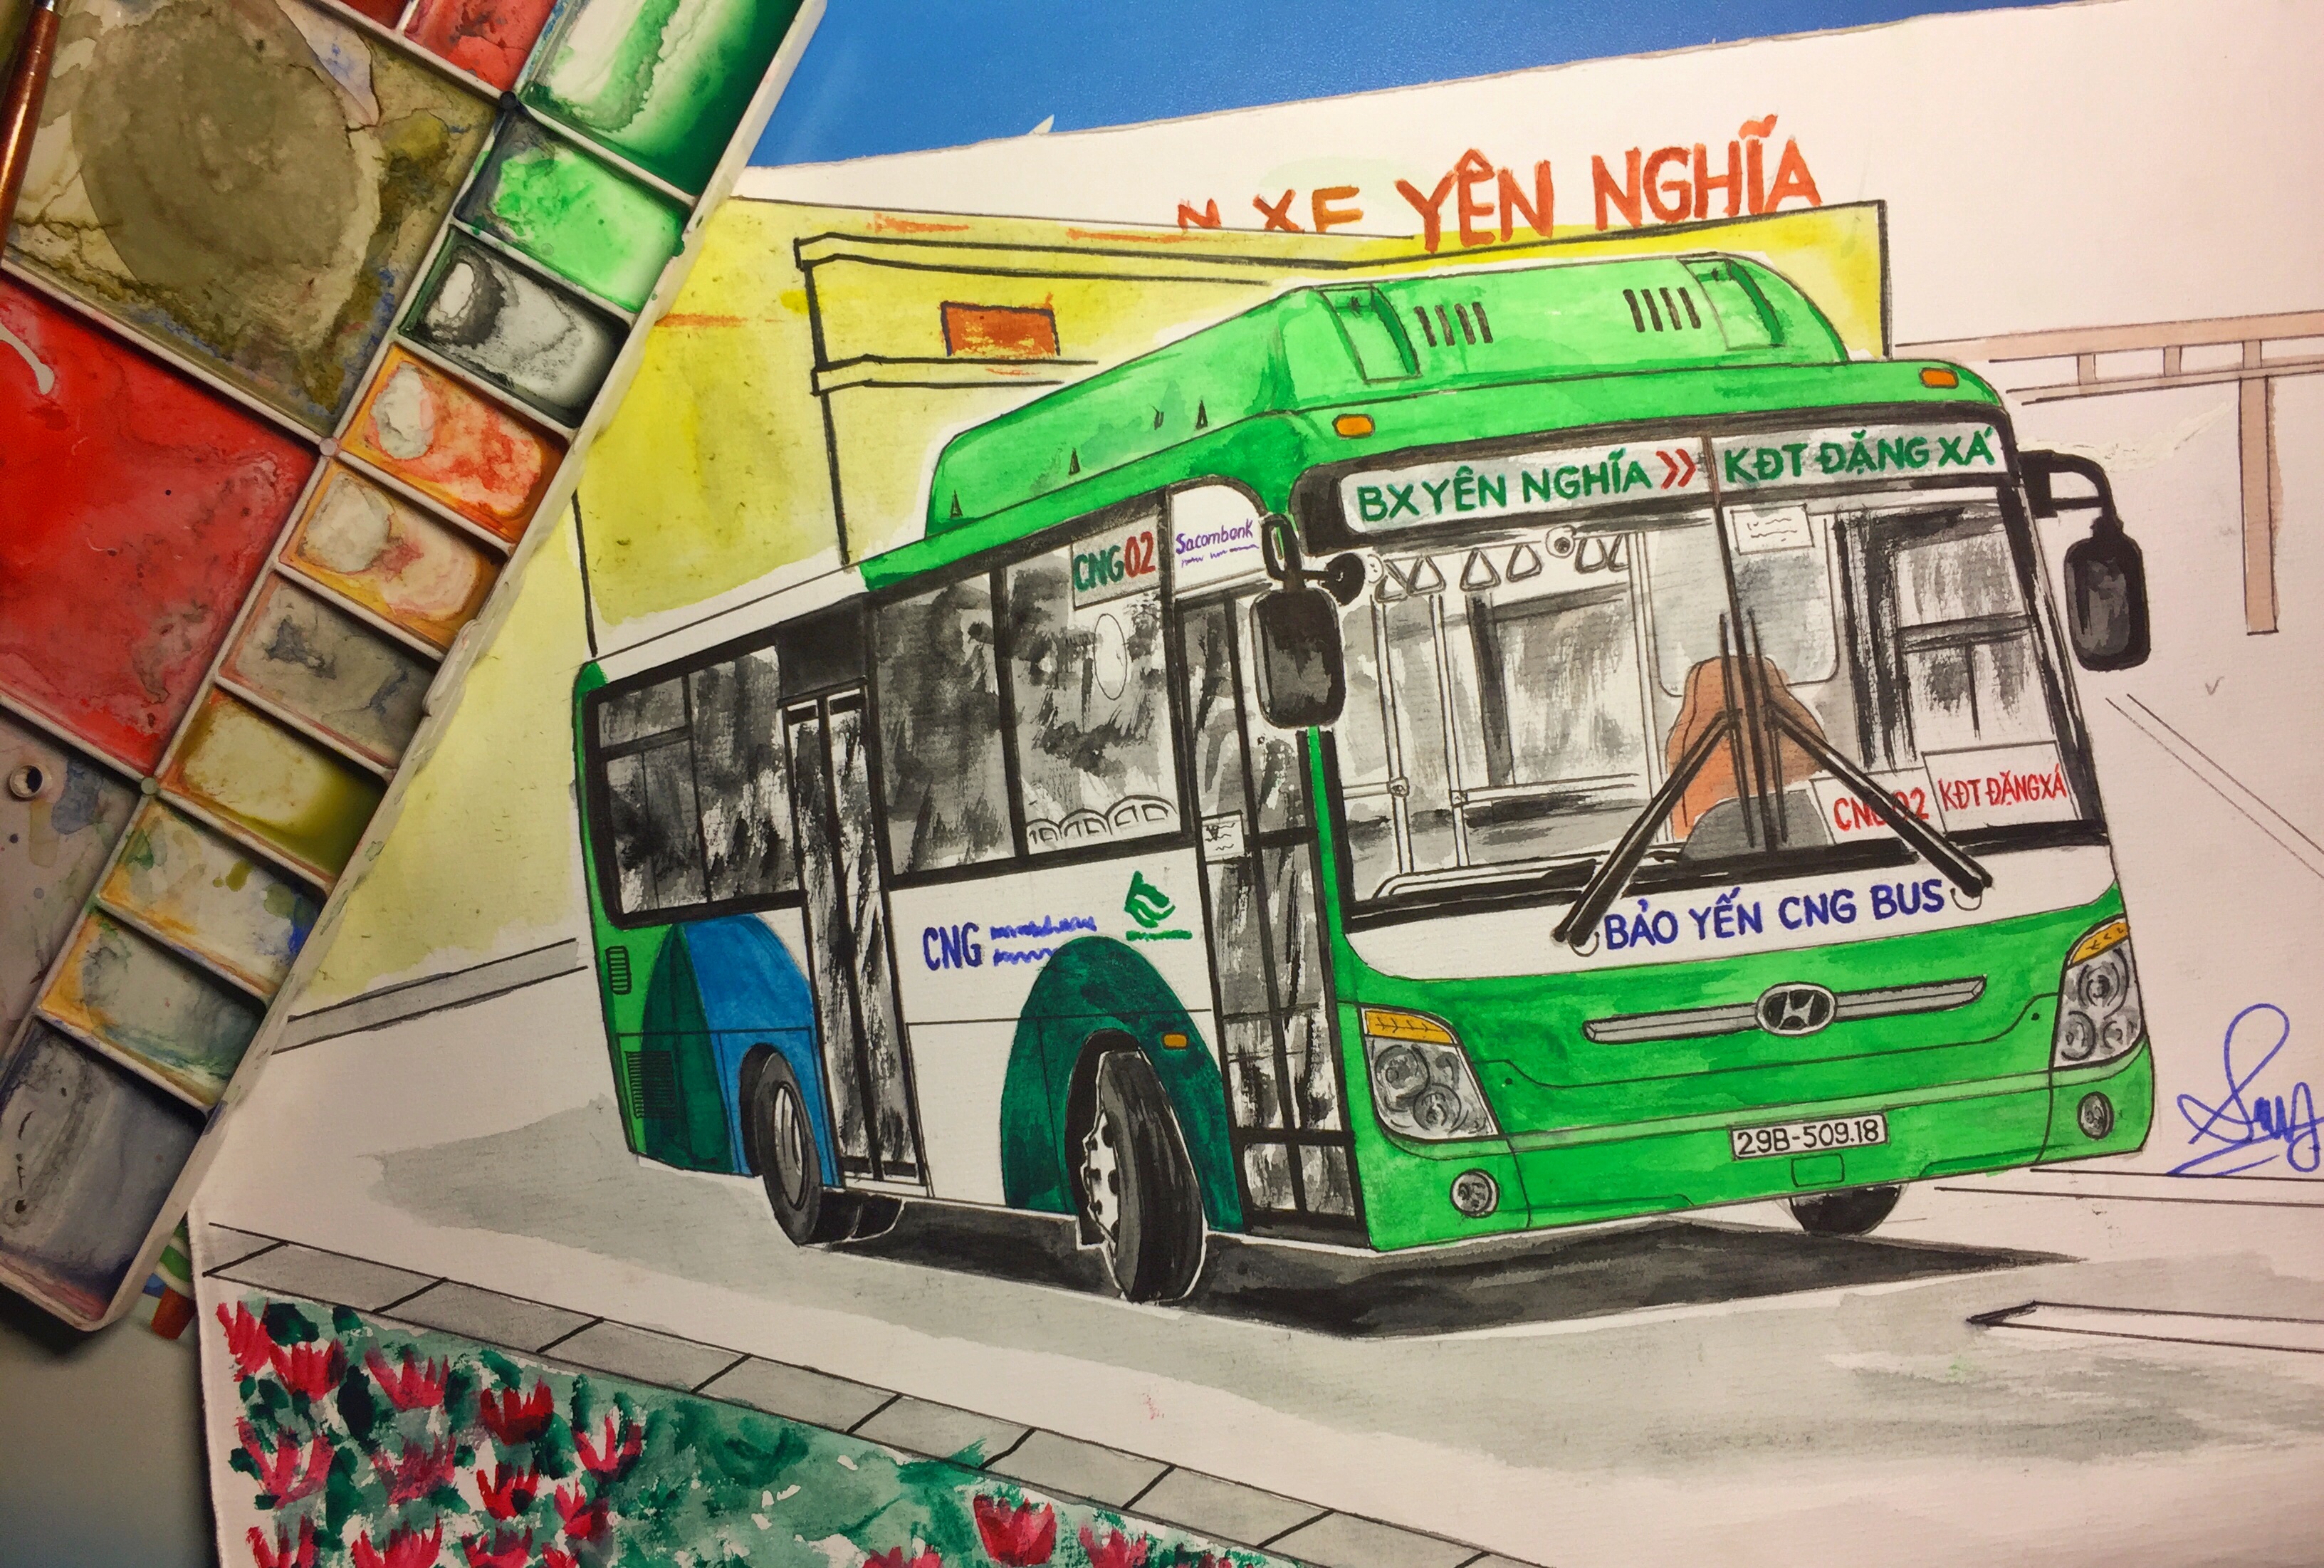 Nếu bạn là một người yêu thích Hà Nội và phương tiện giao thông cộng đồng, thì tranh vẽ xe buýt Hà Nội sẽ là sự lựa chọn hoàn hảo. Các tác phẩm này sẽ đưa bạn về những con phố quen thuộc với những chiếc xe buýt đầy màu sắc.